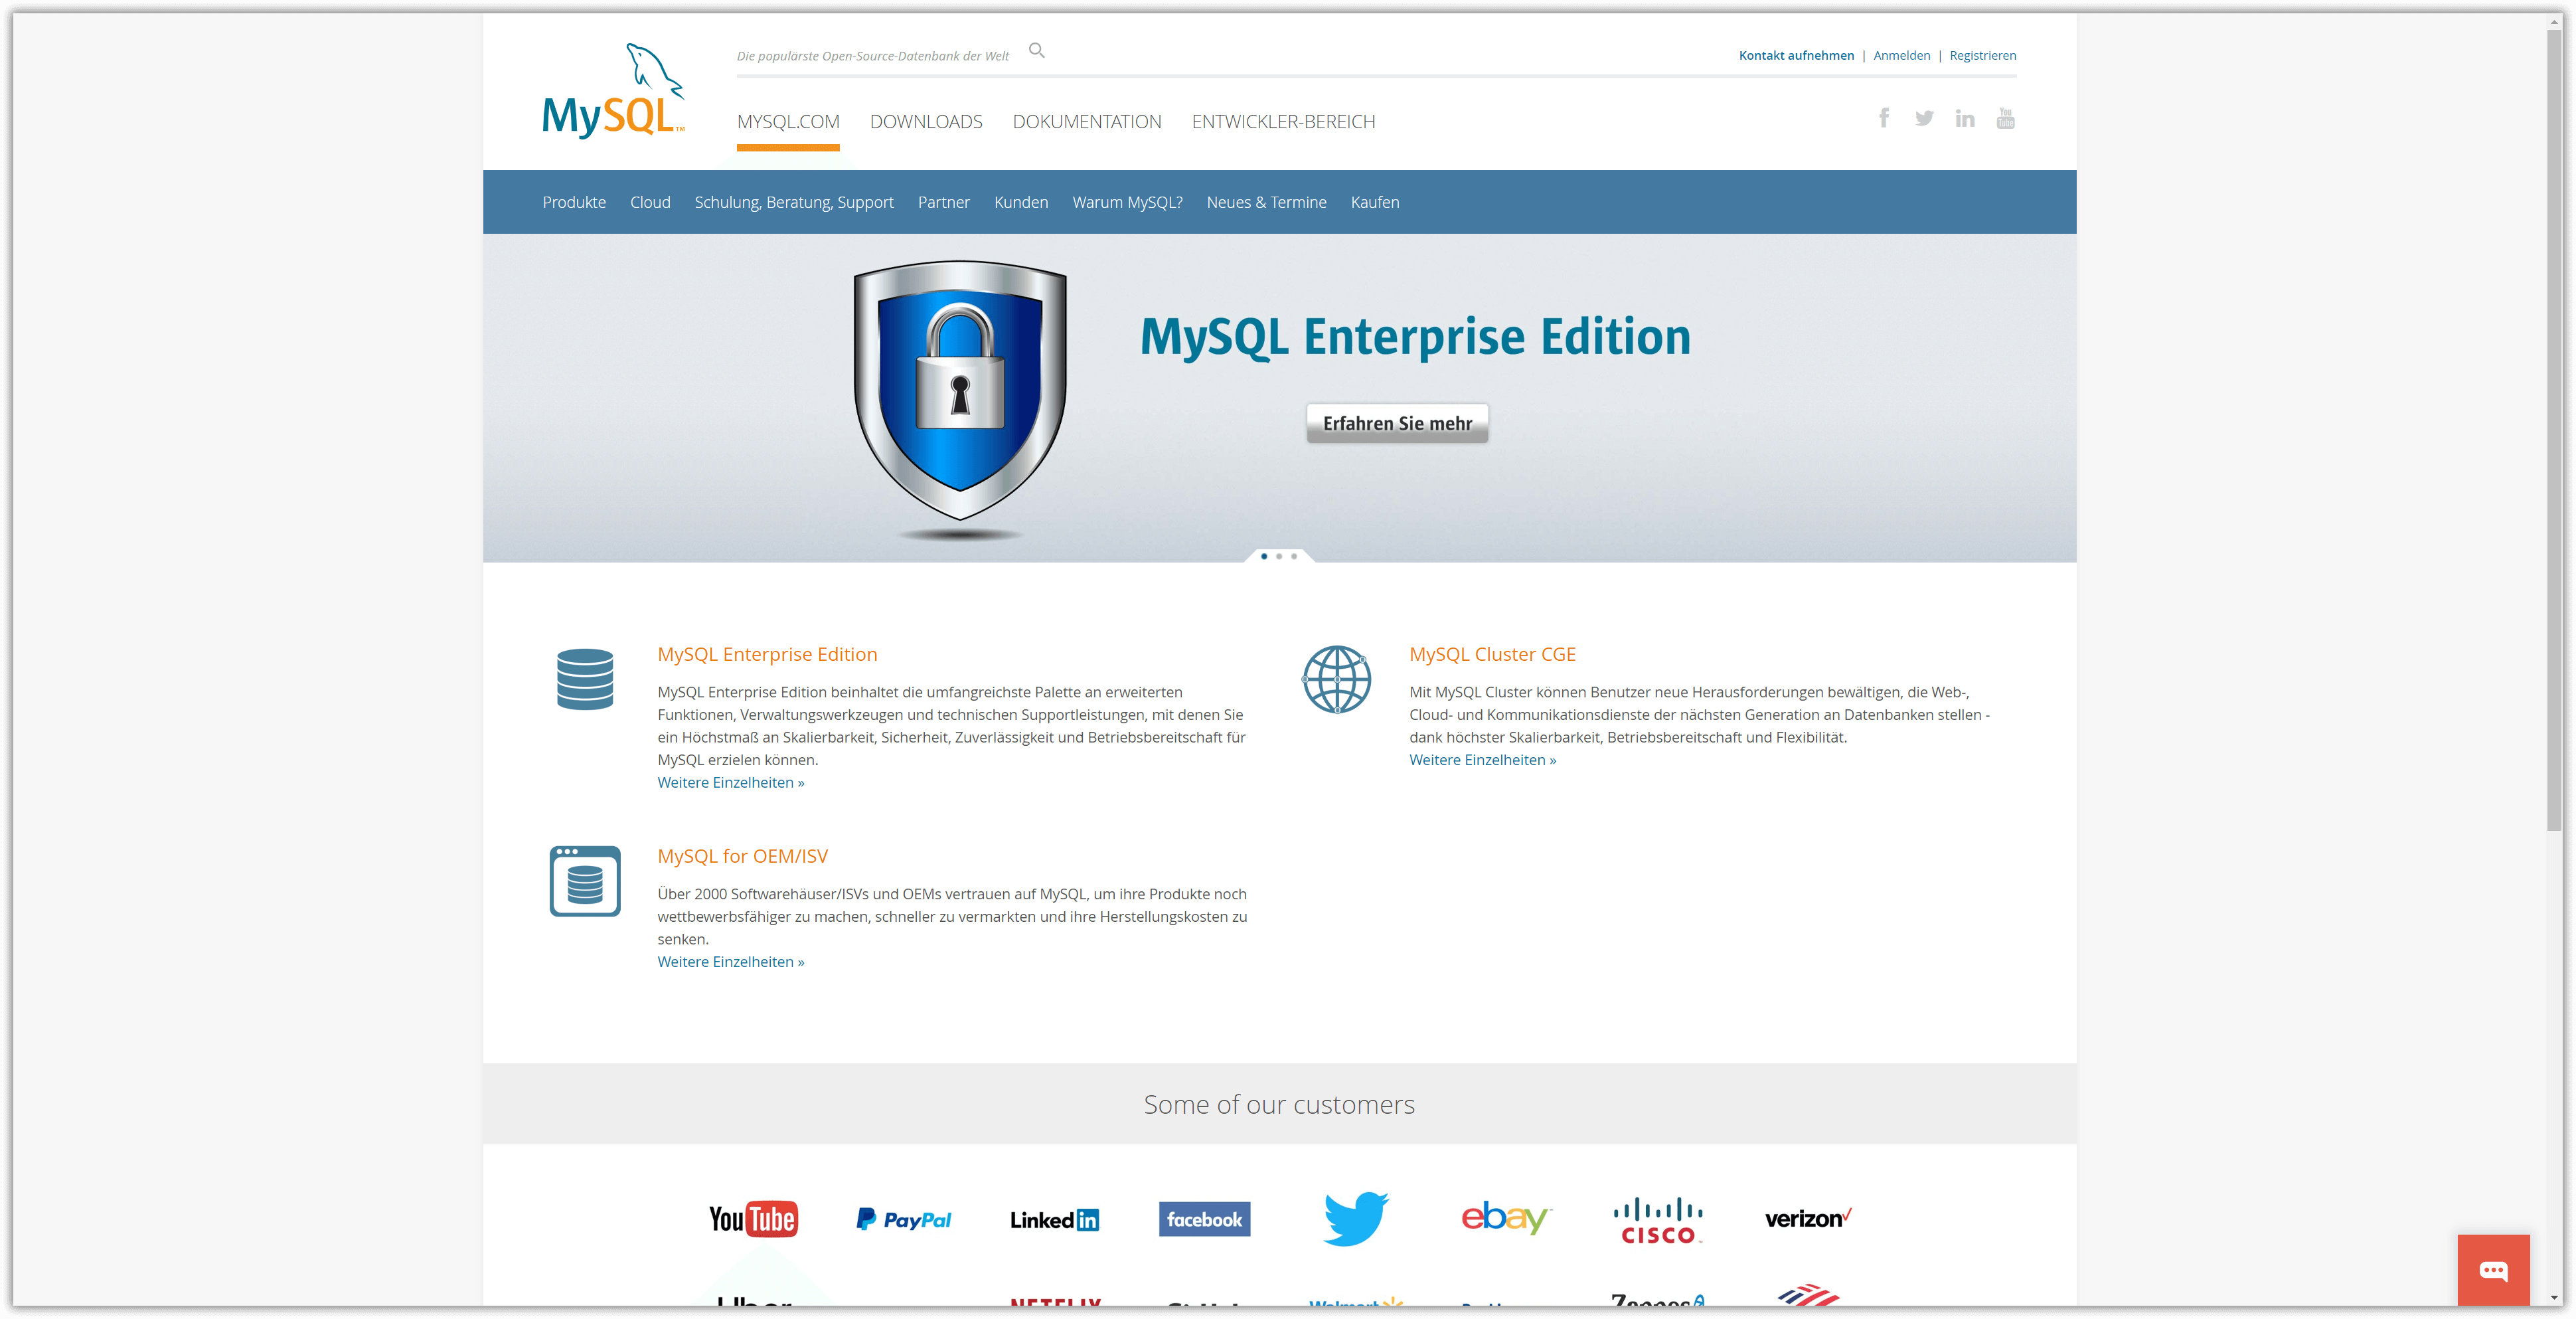 Die MySQL-Homepage